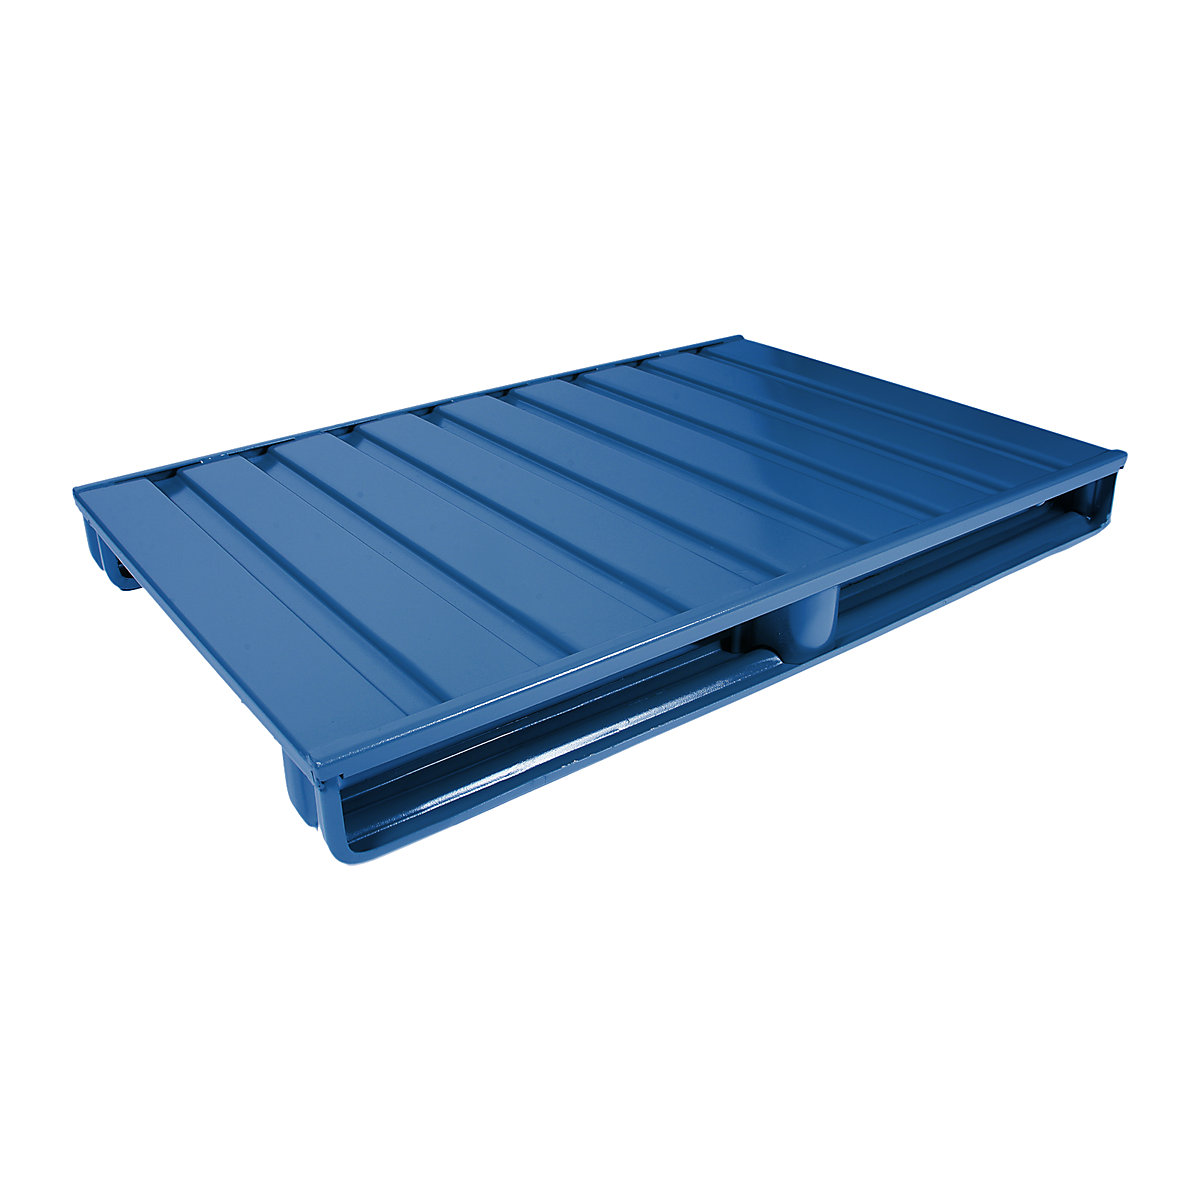 Palete plana de aço – Heson, CxL 1200 x 800 mm, capacidade de carga 2000 kg, azul genciana-2